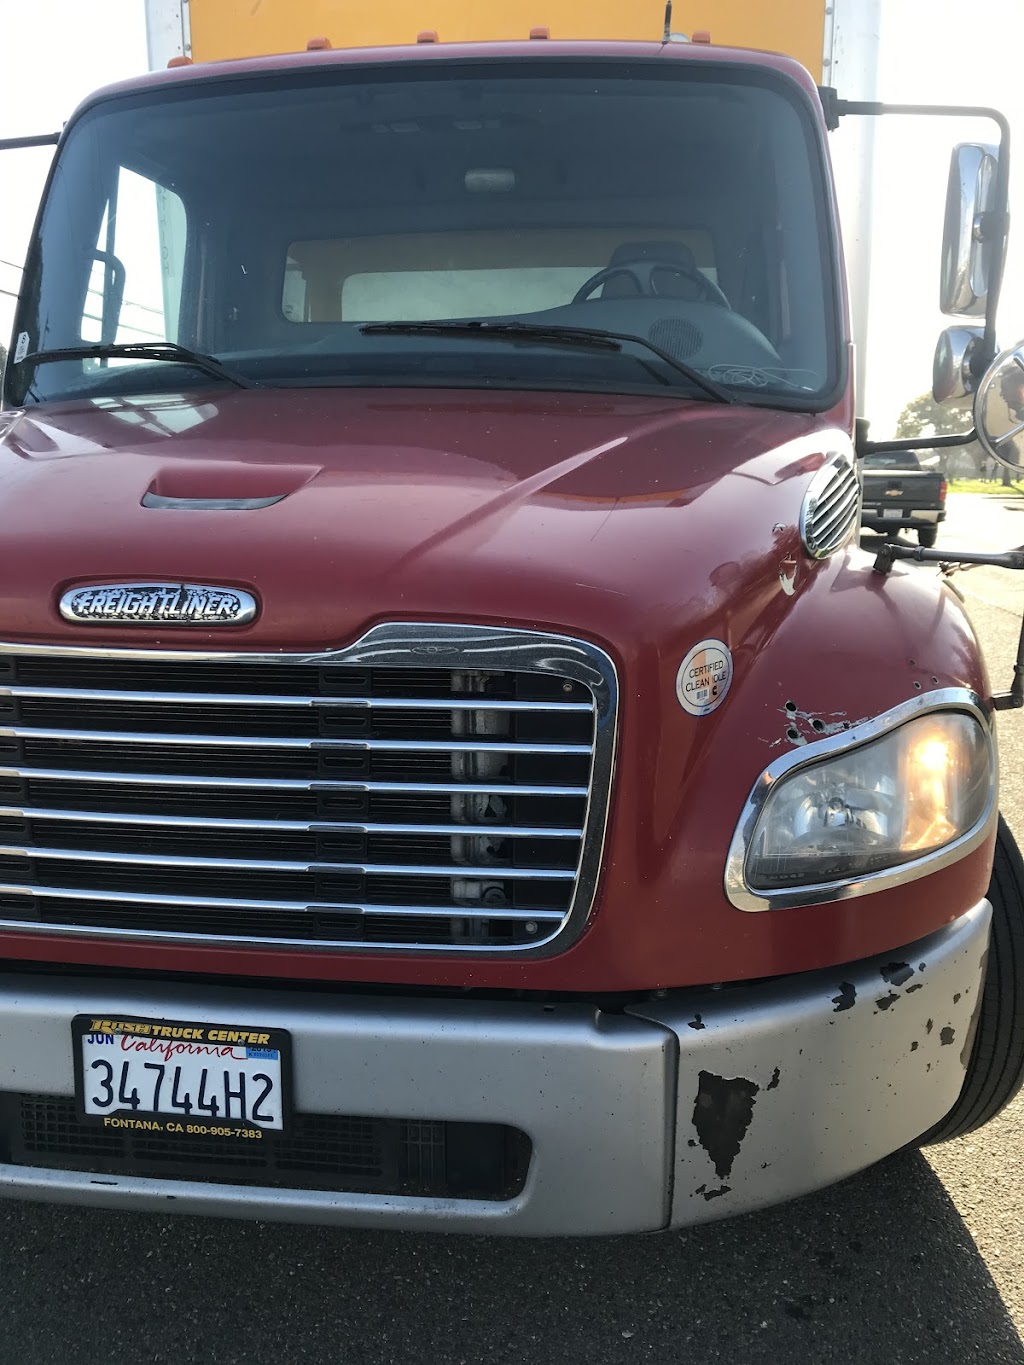 Carlos road service diesel mechanic | 100 Old Adobe Rd, Penngrove, CA 94951 | Phone: (707) 331-8678